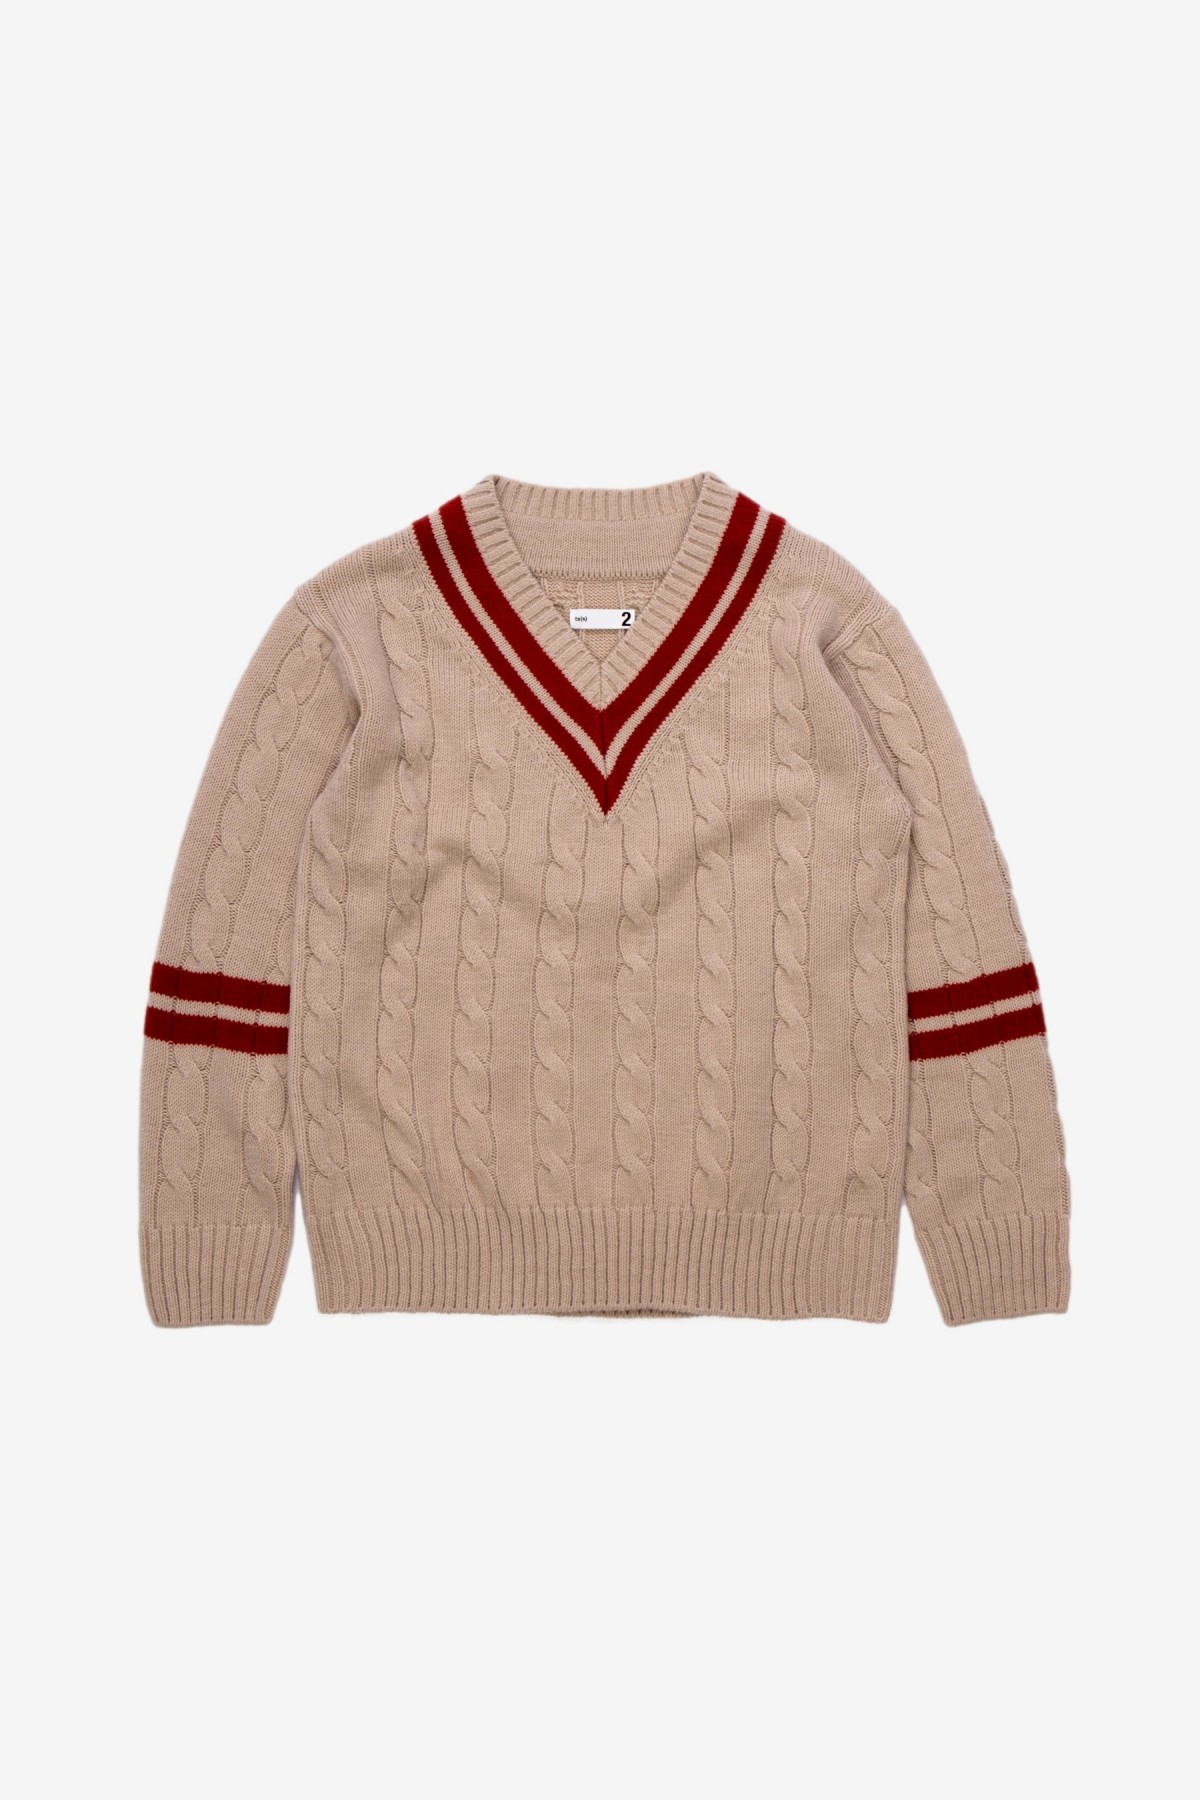 ts(s) Cricket Sweater in Beige